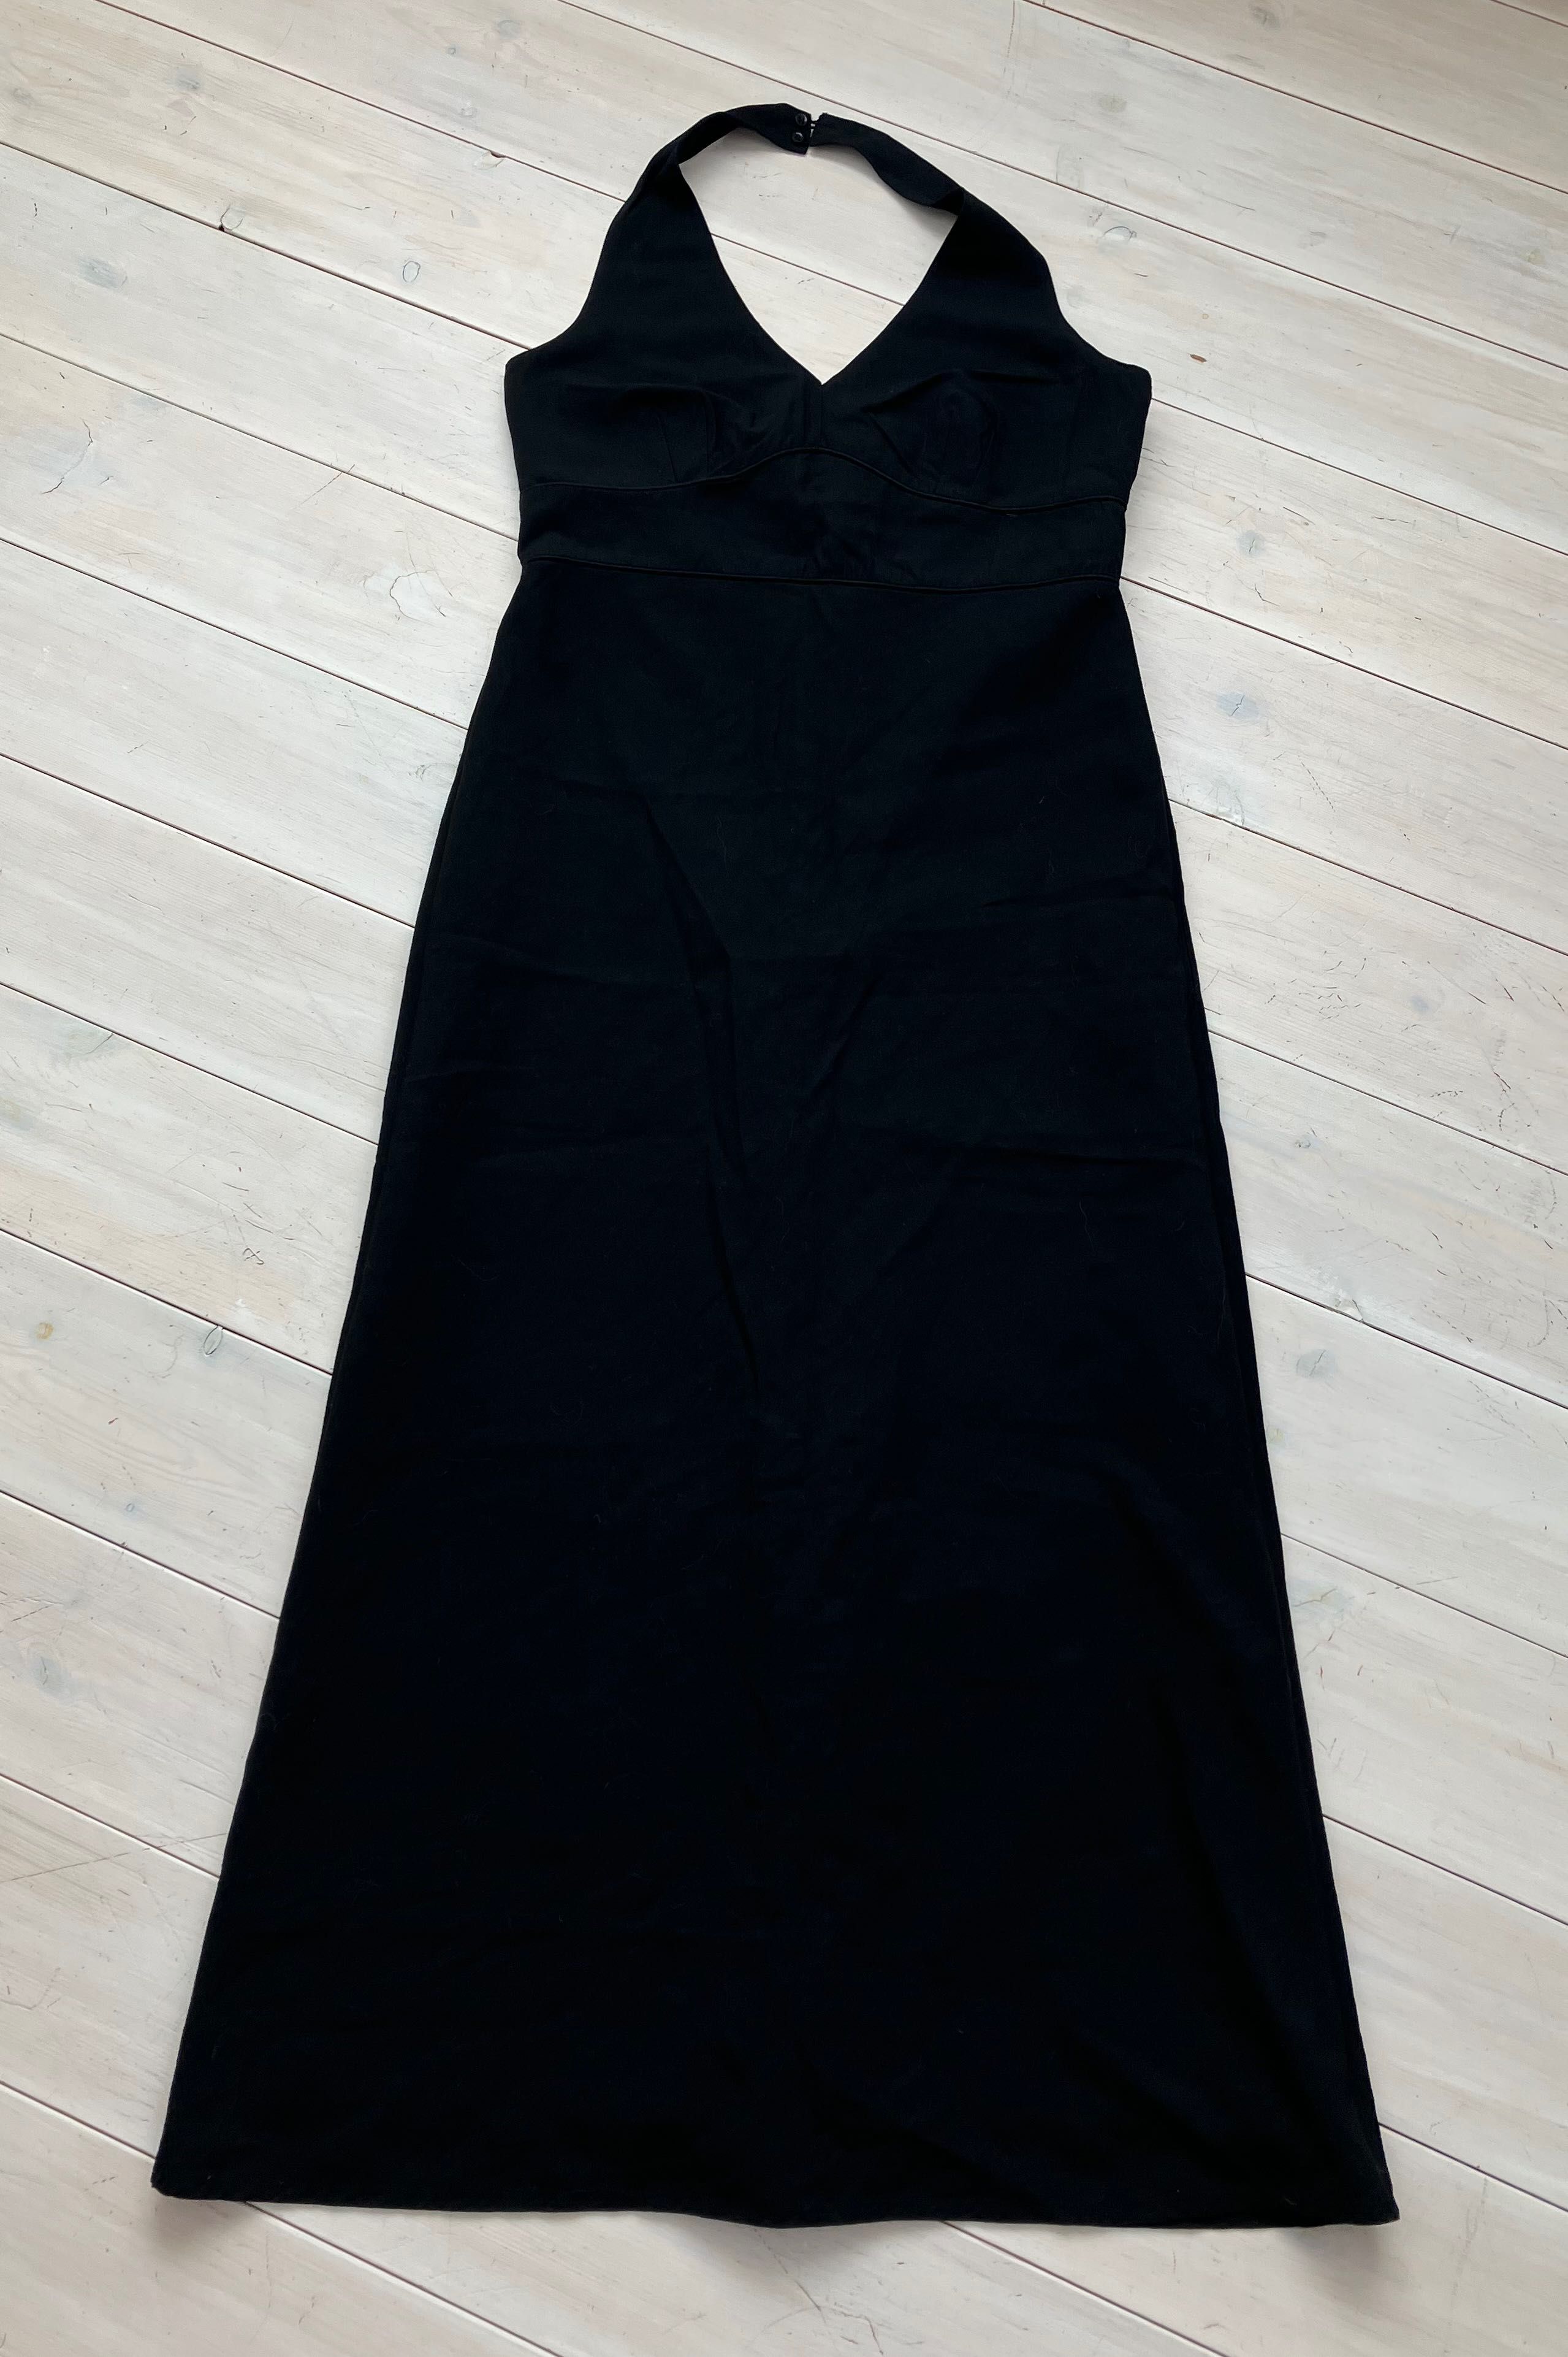 rozm. 40/42 - Camaieu - czarna, długa sukienka na okazje